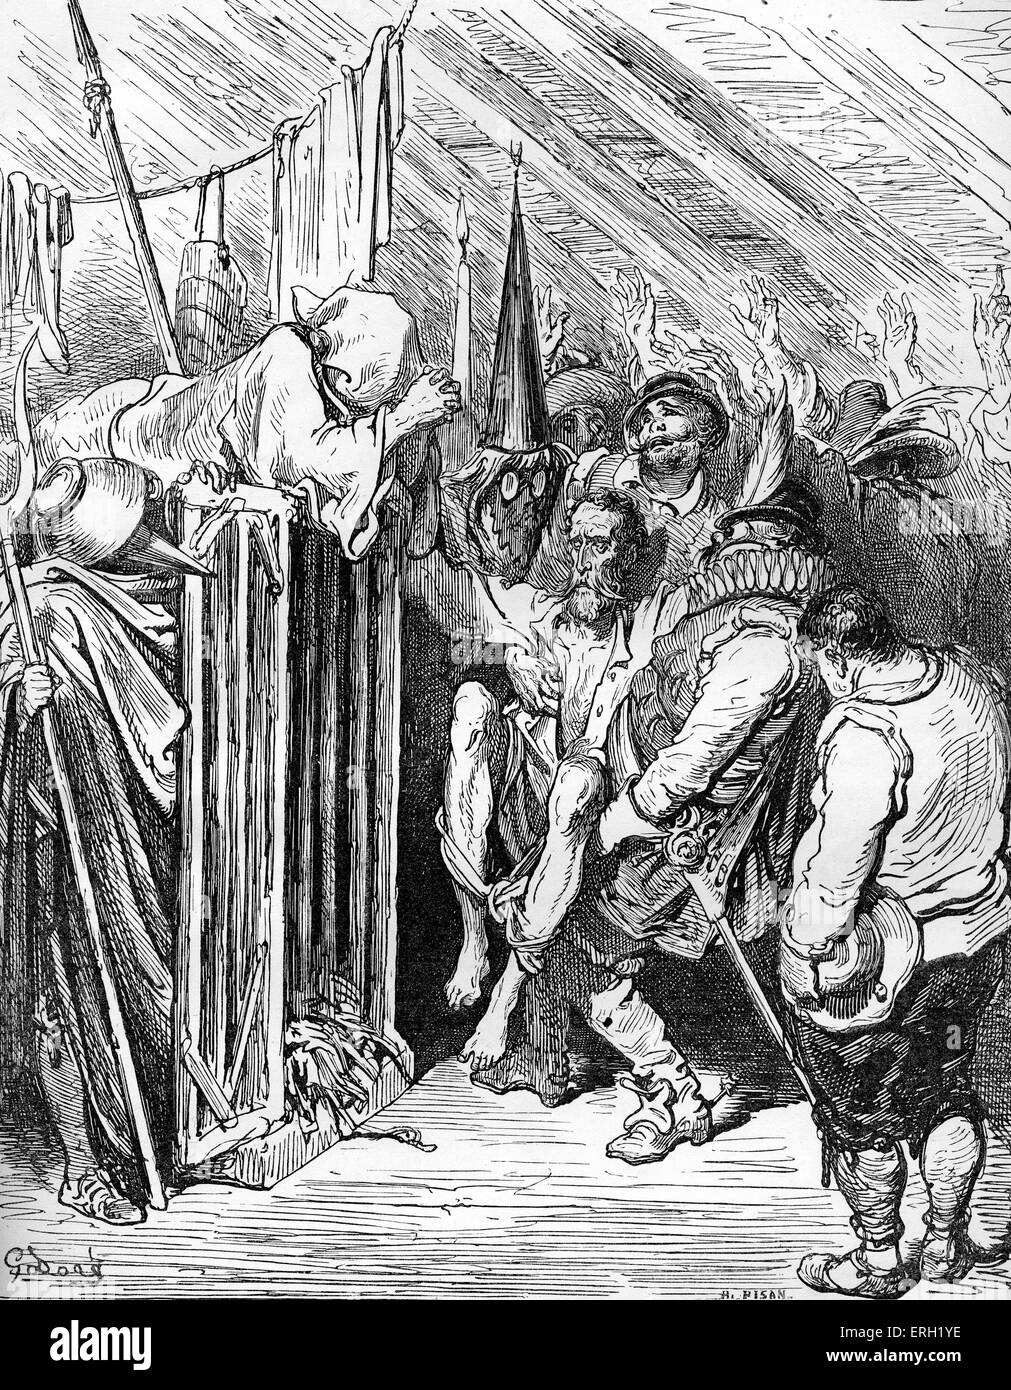 L'histoire de Don Quichotte de la Manche écrit par Miguel de Cervantes , auteur espagnol, et illustré par Gustave Dore. Banque D'Images